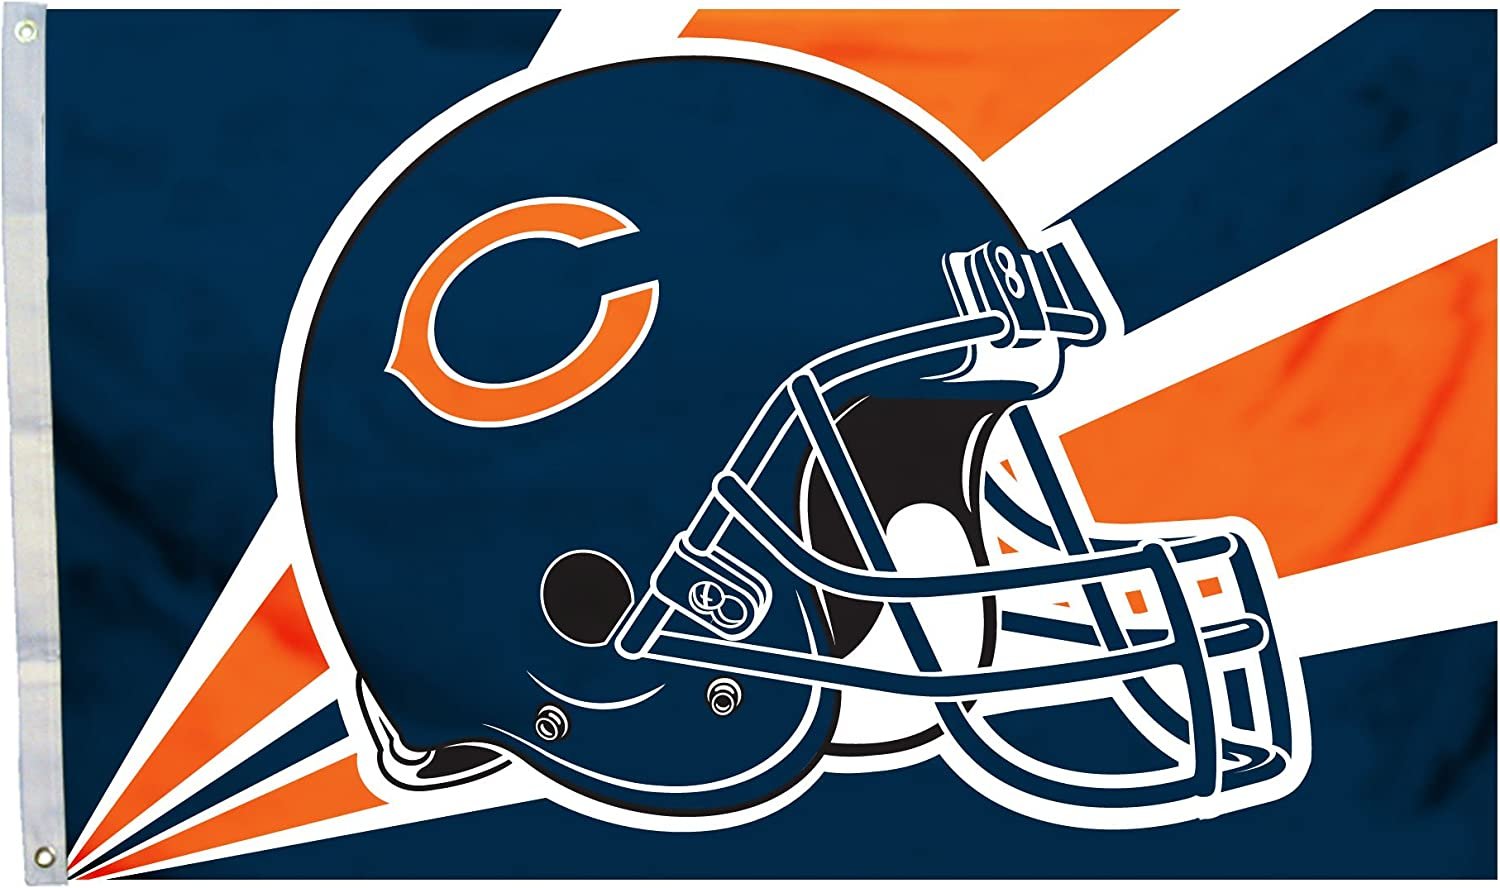 Chicago Bears 3' x 5' Flag Banner with Metal Grommets Outdoor Helmet Design